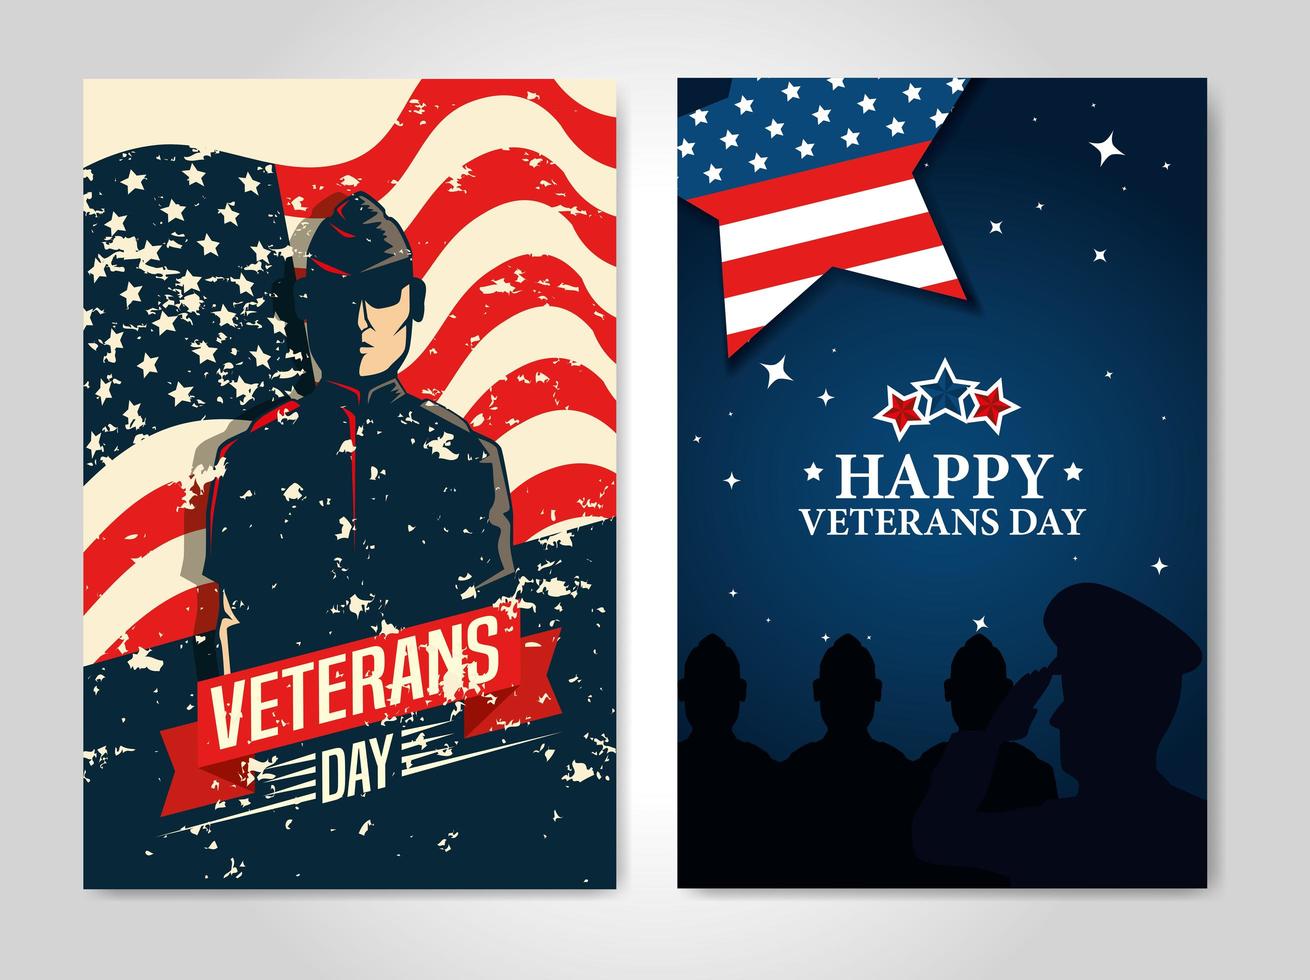 ensemble d'affiches de la journée des anciens combattants avec décoration vecteur